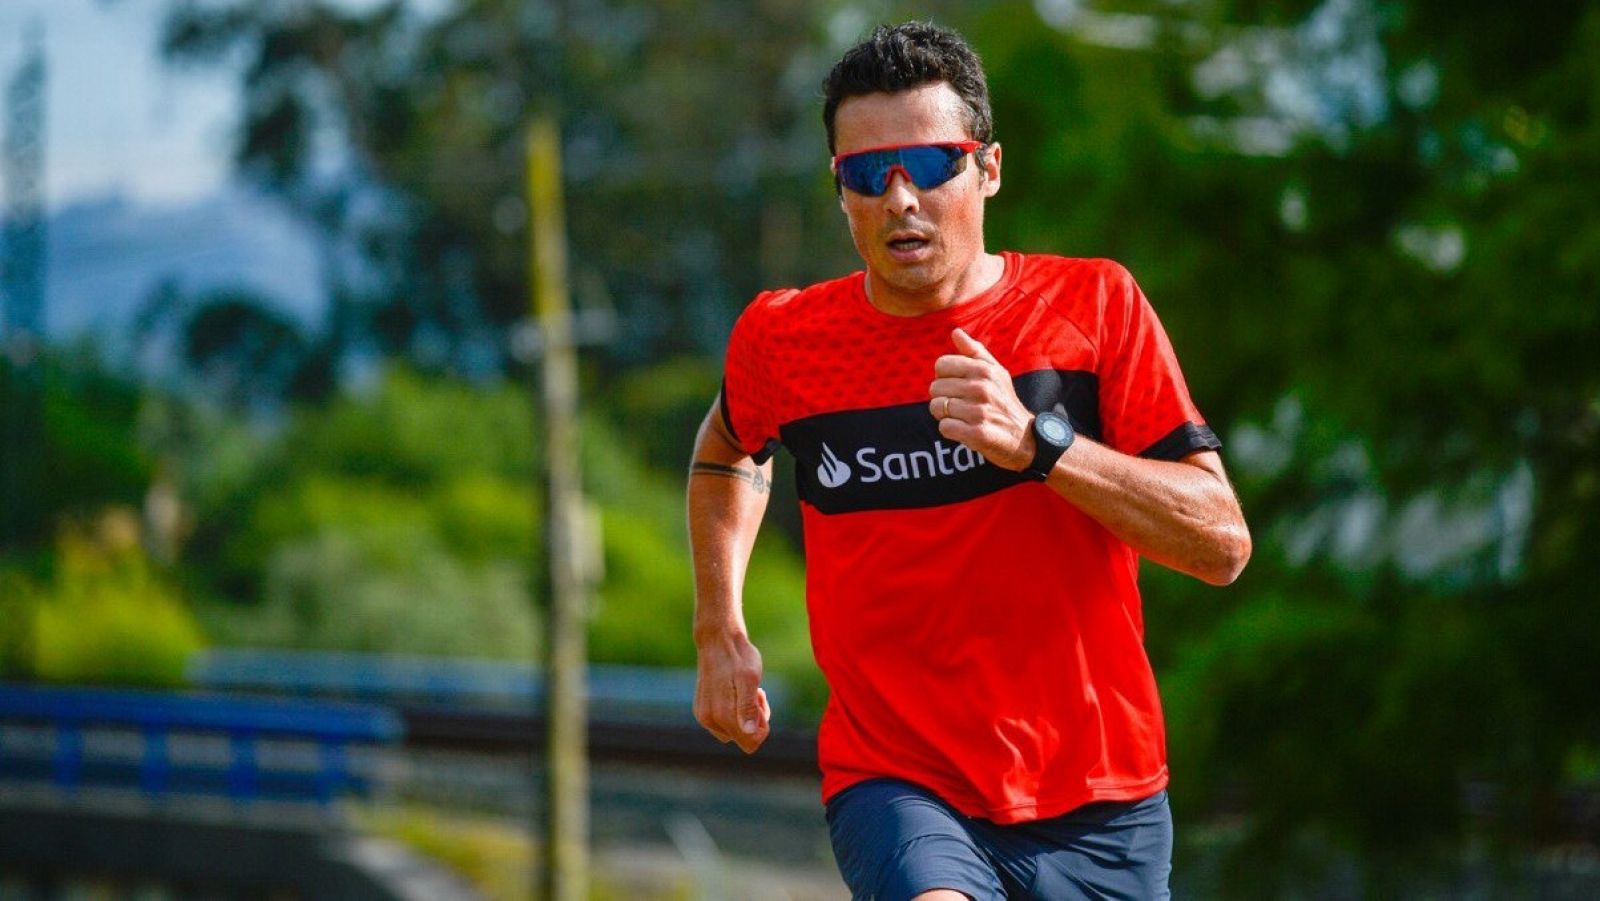 Triatlón | Gómez Noya: "Creo que en un mes podría volver a estar en forma competitiva"